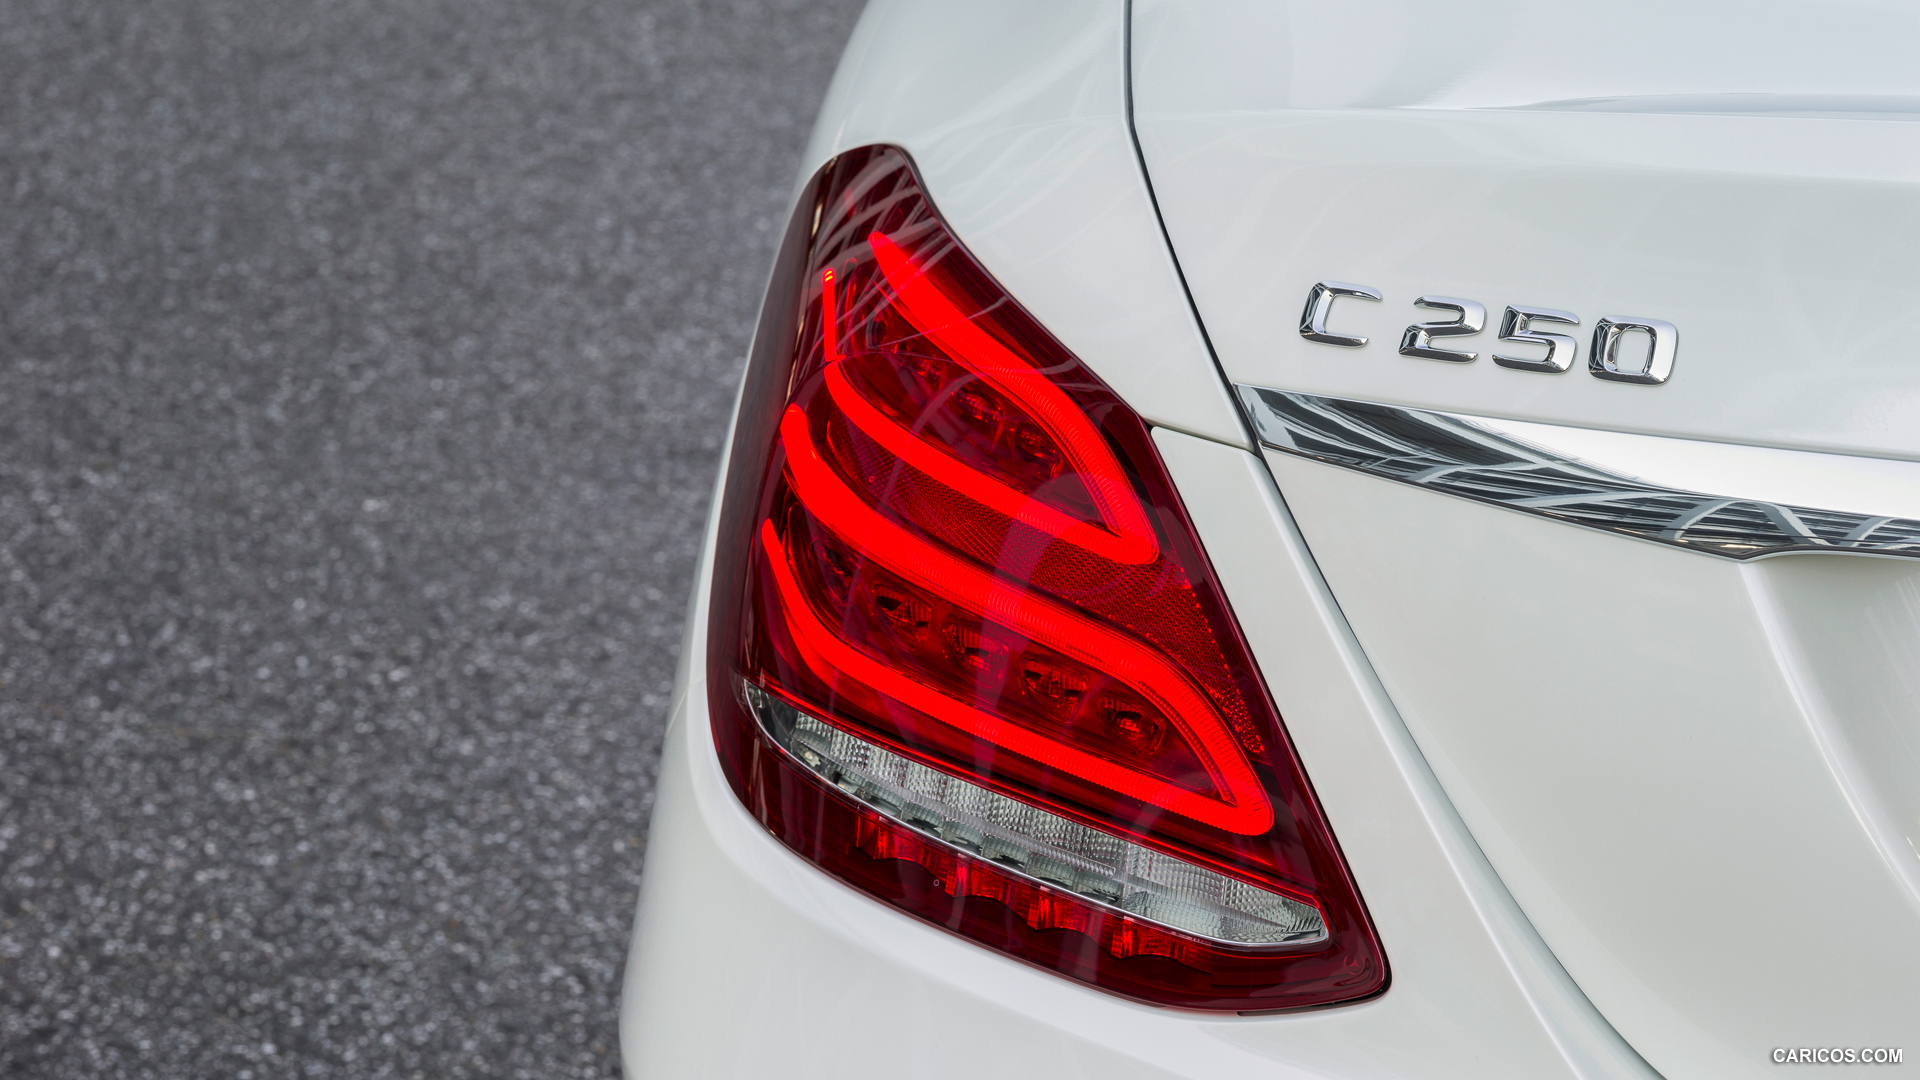 2015 Mercedes-Benz C-Class C250 BlueTEC (Avantgarde) - Tail Light, #179 of 181